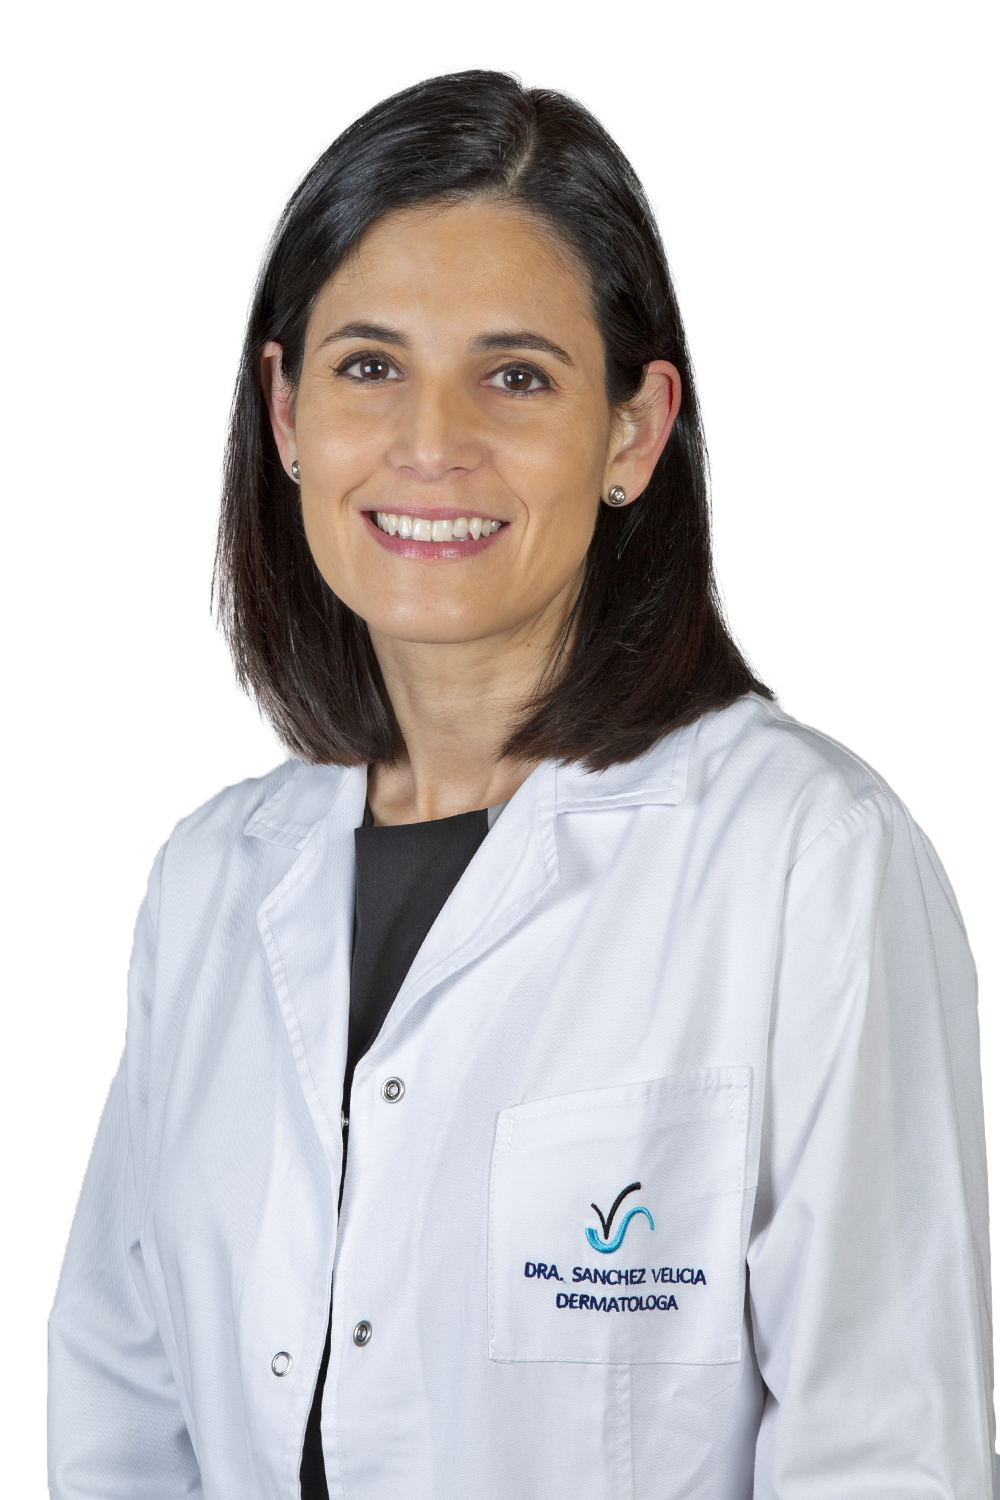 Dra Laura Sánchez Velicia dermatóloga en Valladolid